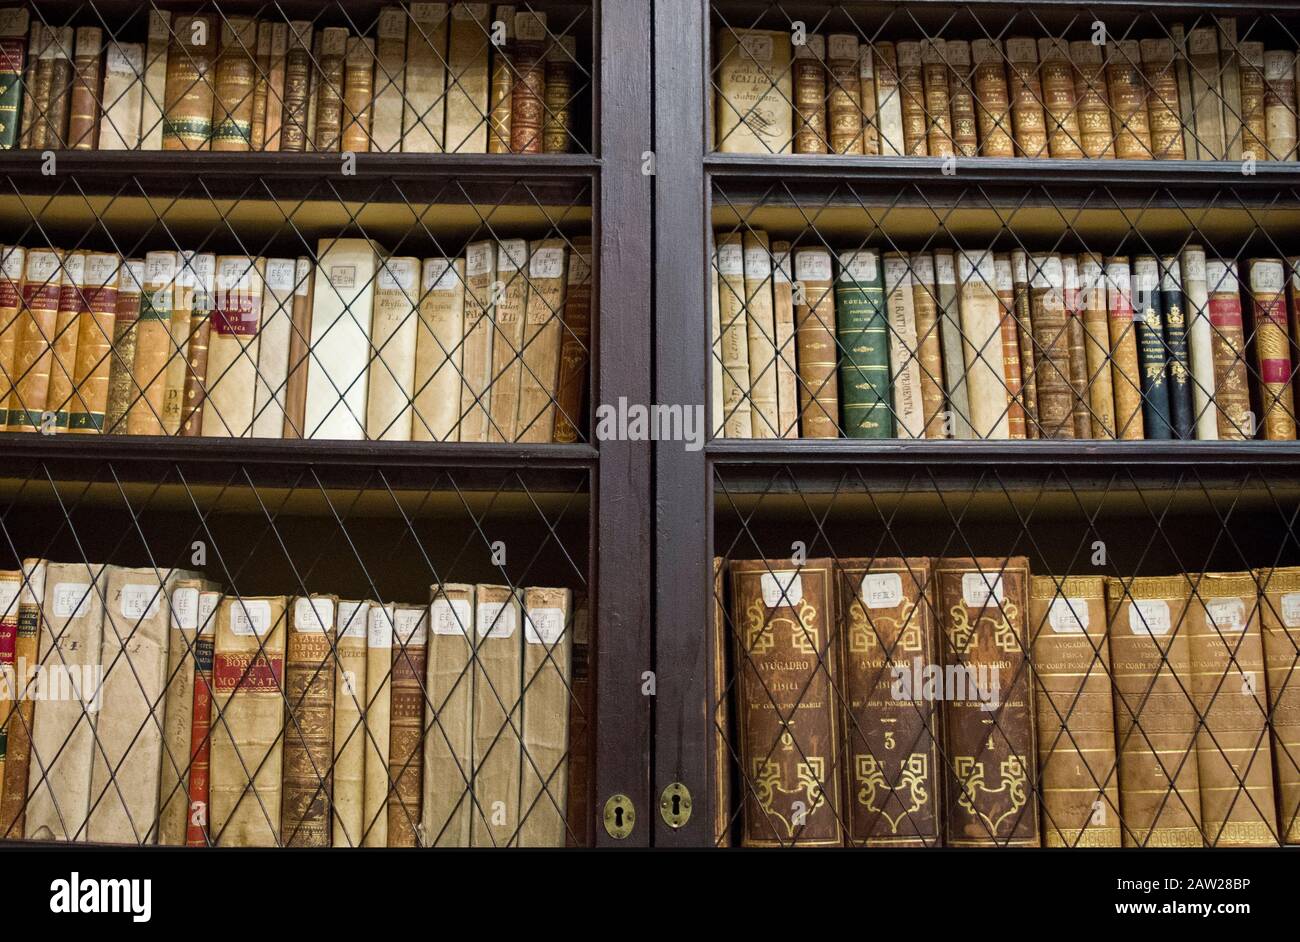 Alte, alte Bibliothek mit Bücherregalen und endlosen Korridoren, die nach dem Klassifizierungssystem der Bibliothek in einer bestimmten Reihenfolge angeordnet sind. Stockfoto